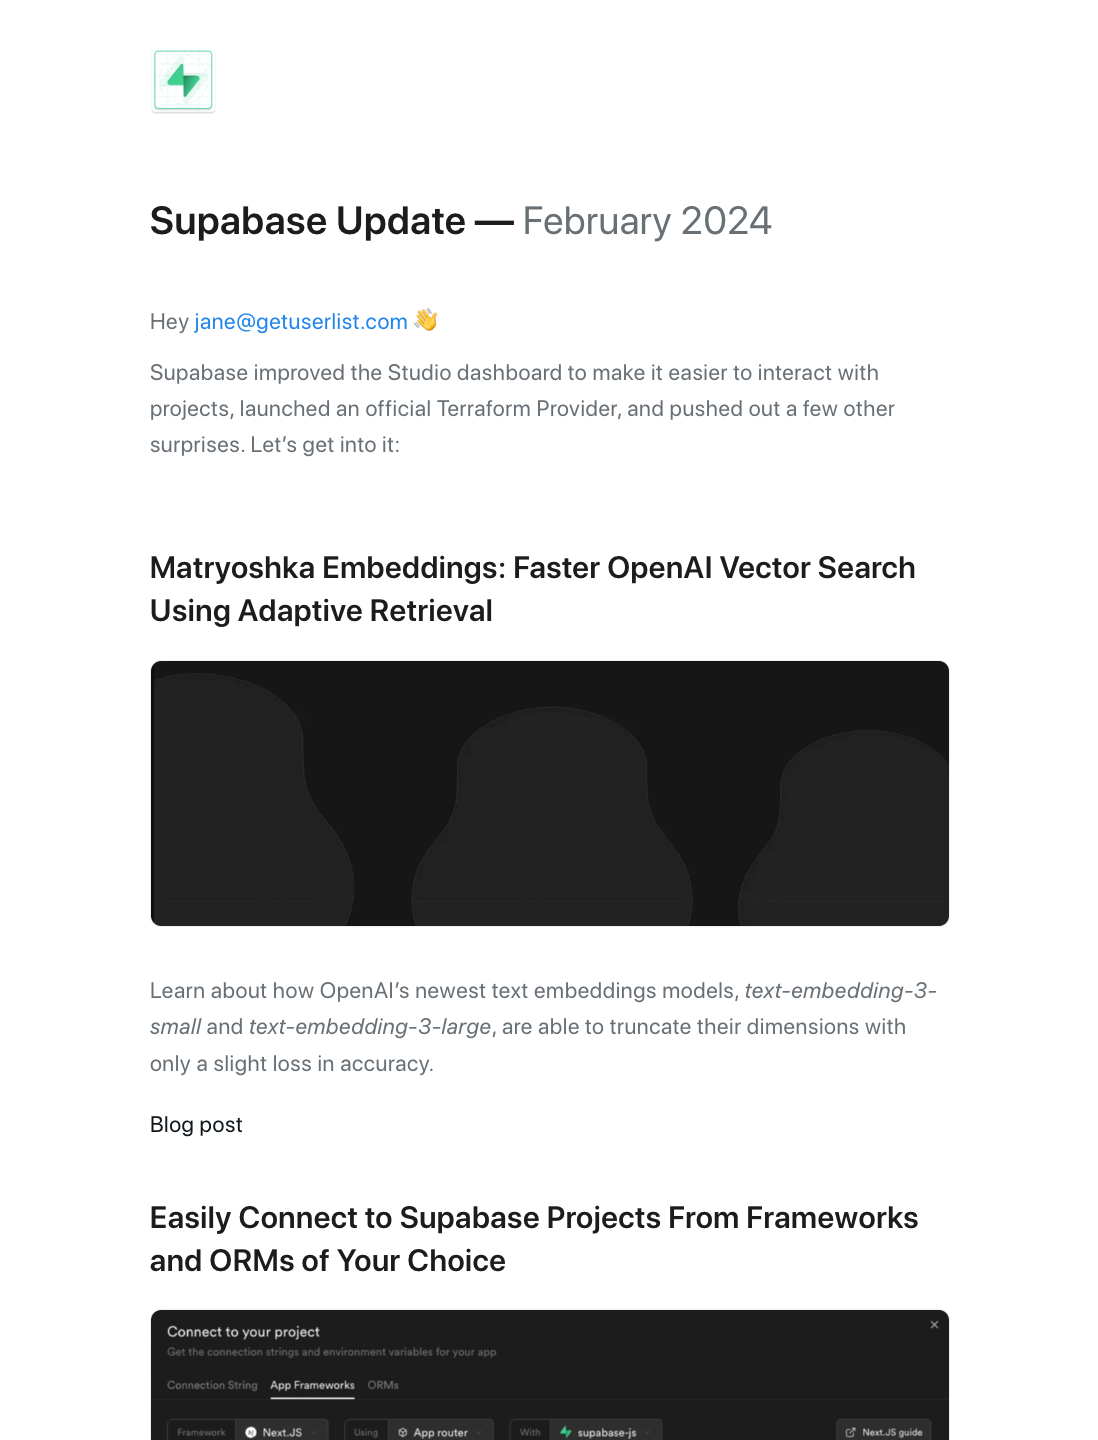 Email Marketing for Devtools: Screenshot of Supabase's newsletter